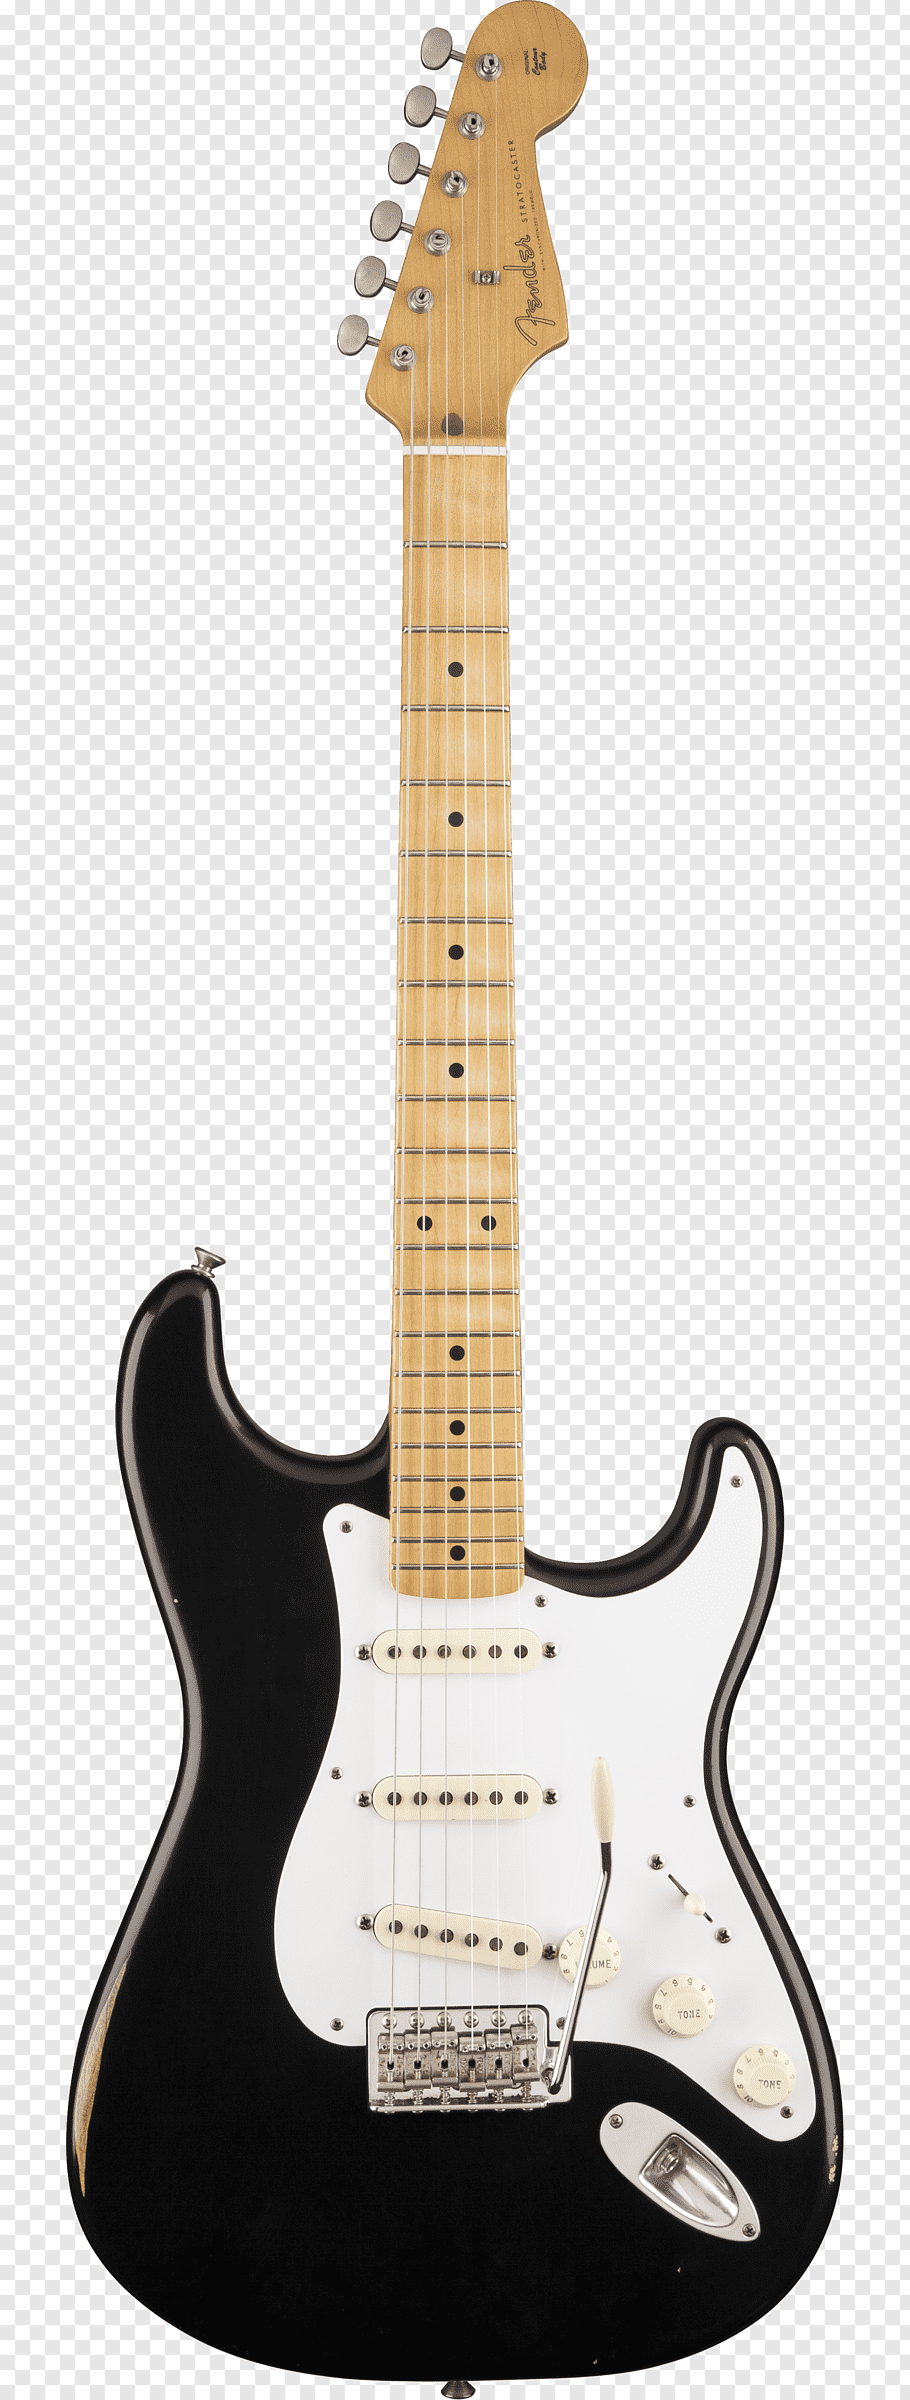 1970s Fender Stratocaster Fender Classic Series 70s.